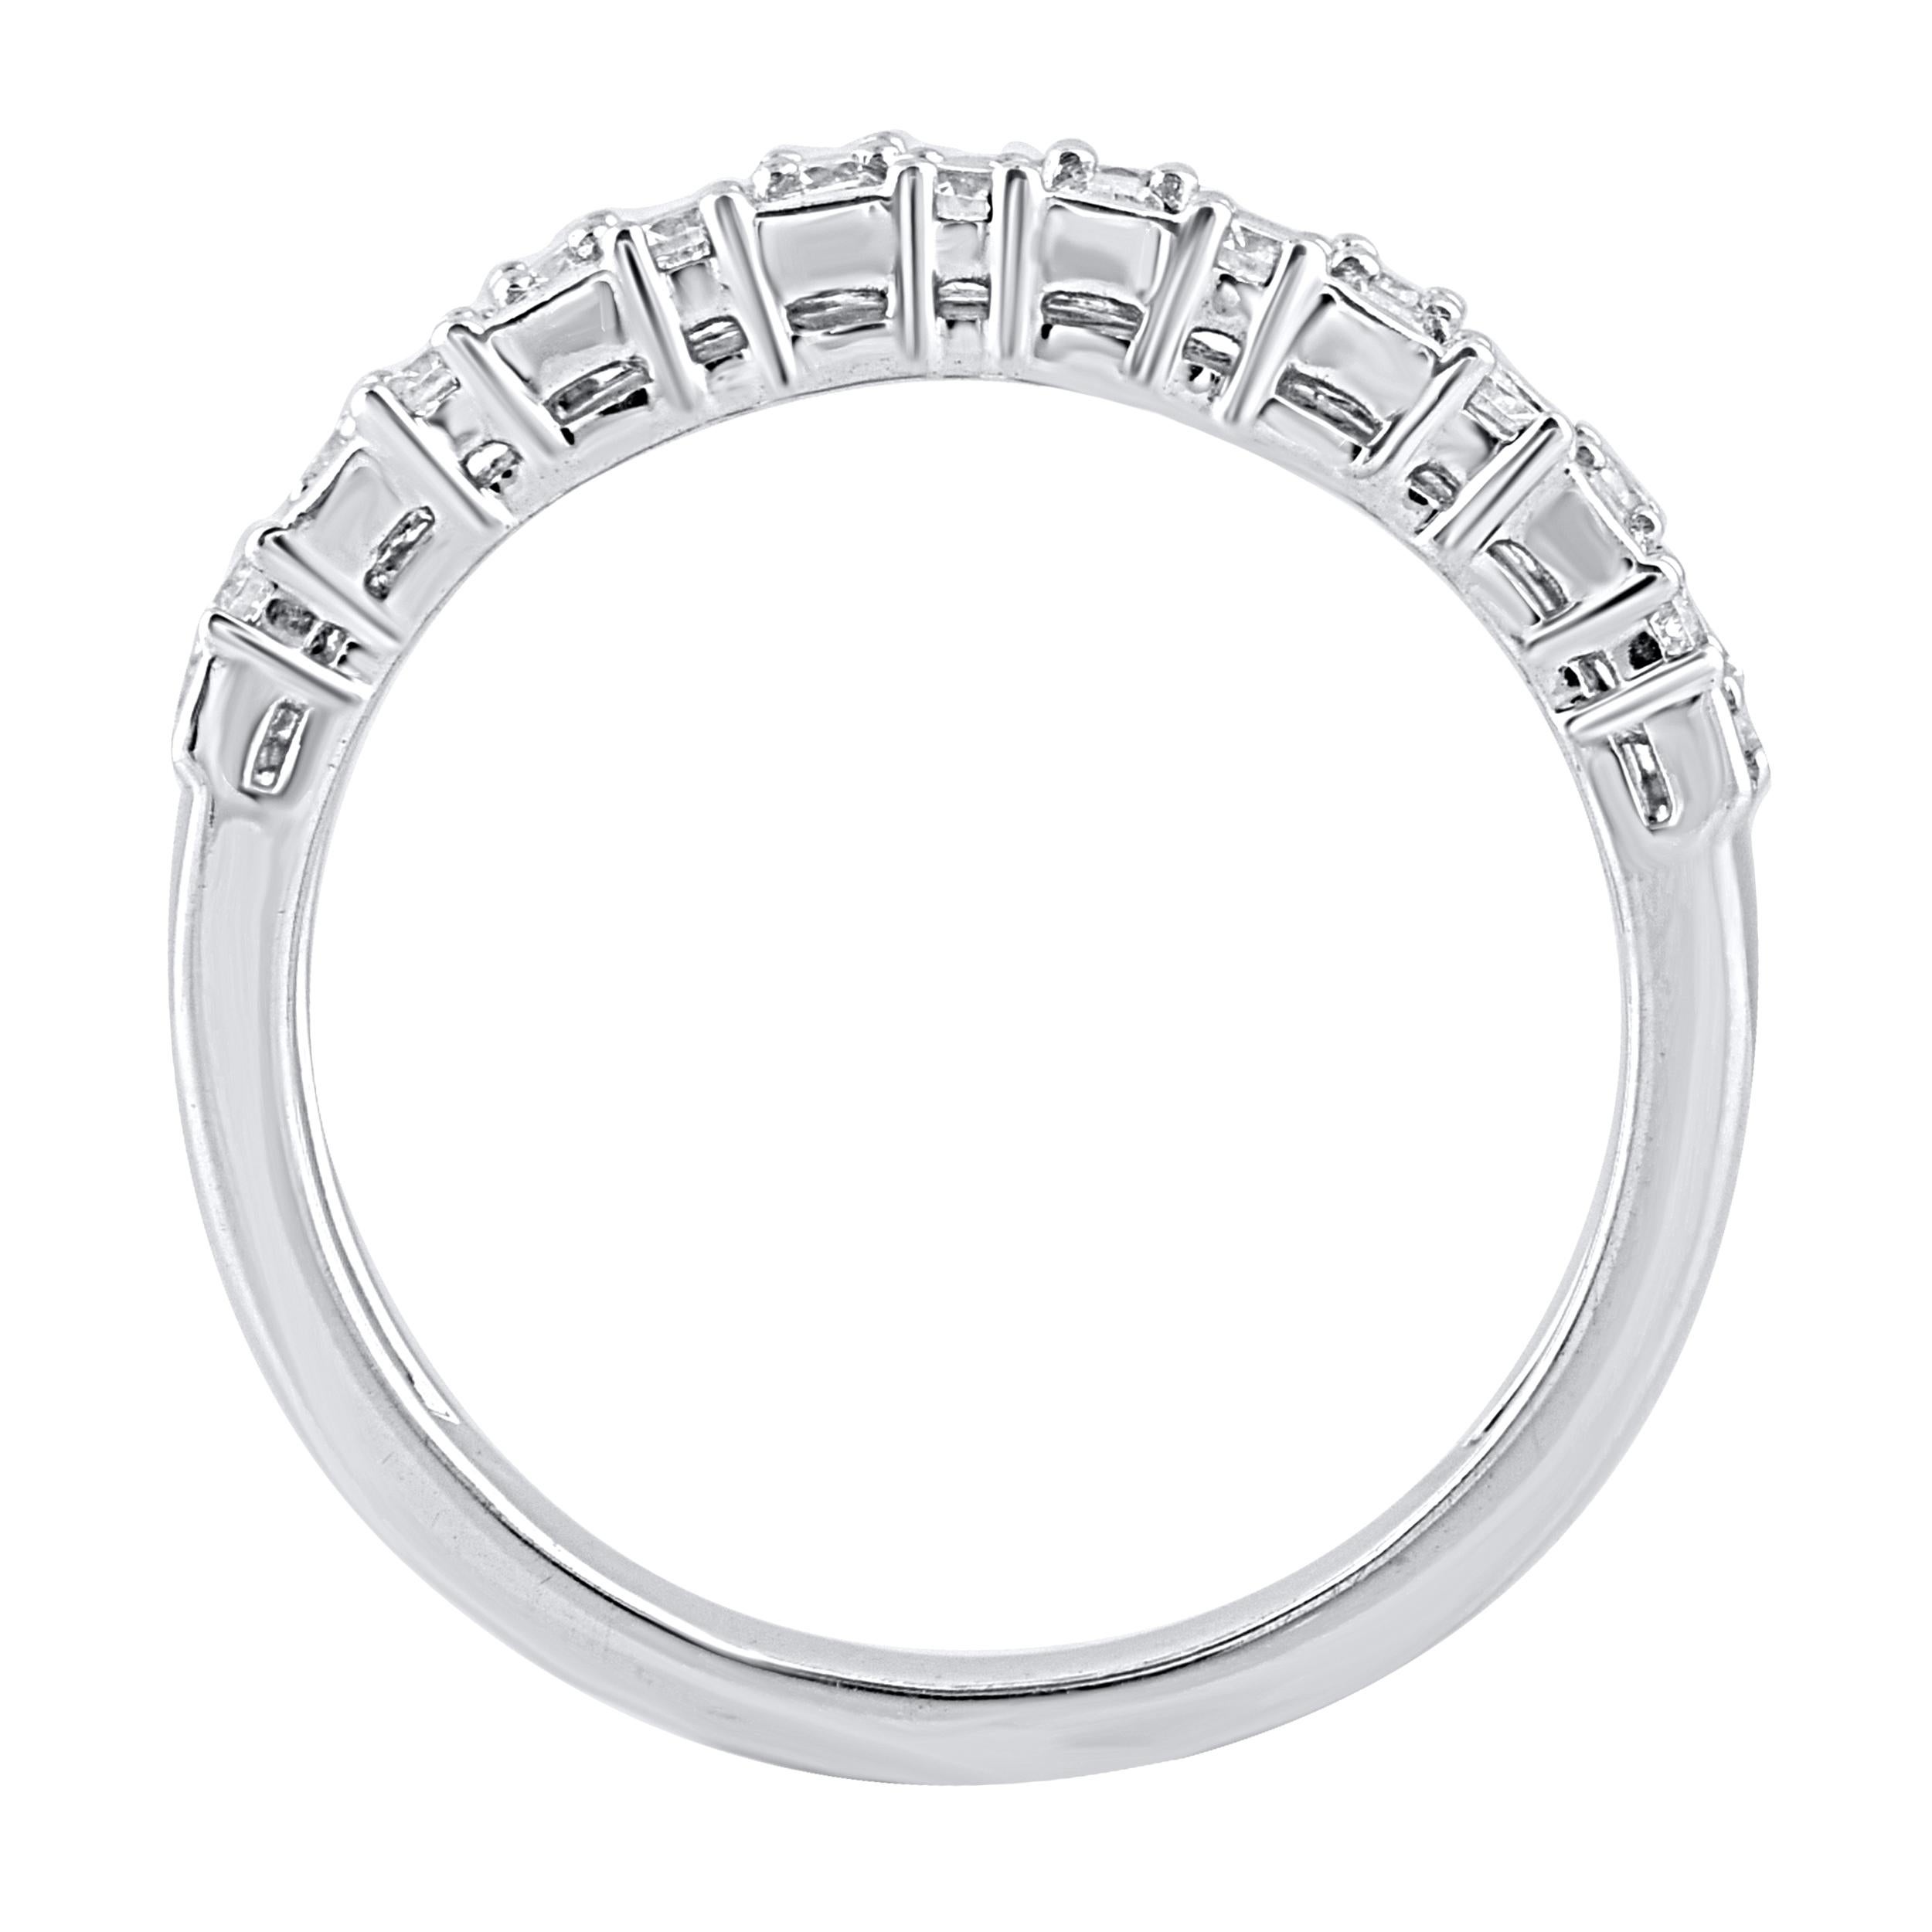 Dieser wunderschöne Verlobungsring ist mit schimmernden Baguette-Diamanten und runden Diamanten im Brillantschliff in Zacken- und Kanalfassung besetzt. Gefertigt aus 14 Karat Weißgold. Der Ring ist mit insgesamt 30 runden Naturdiamanten im